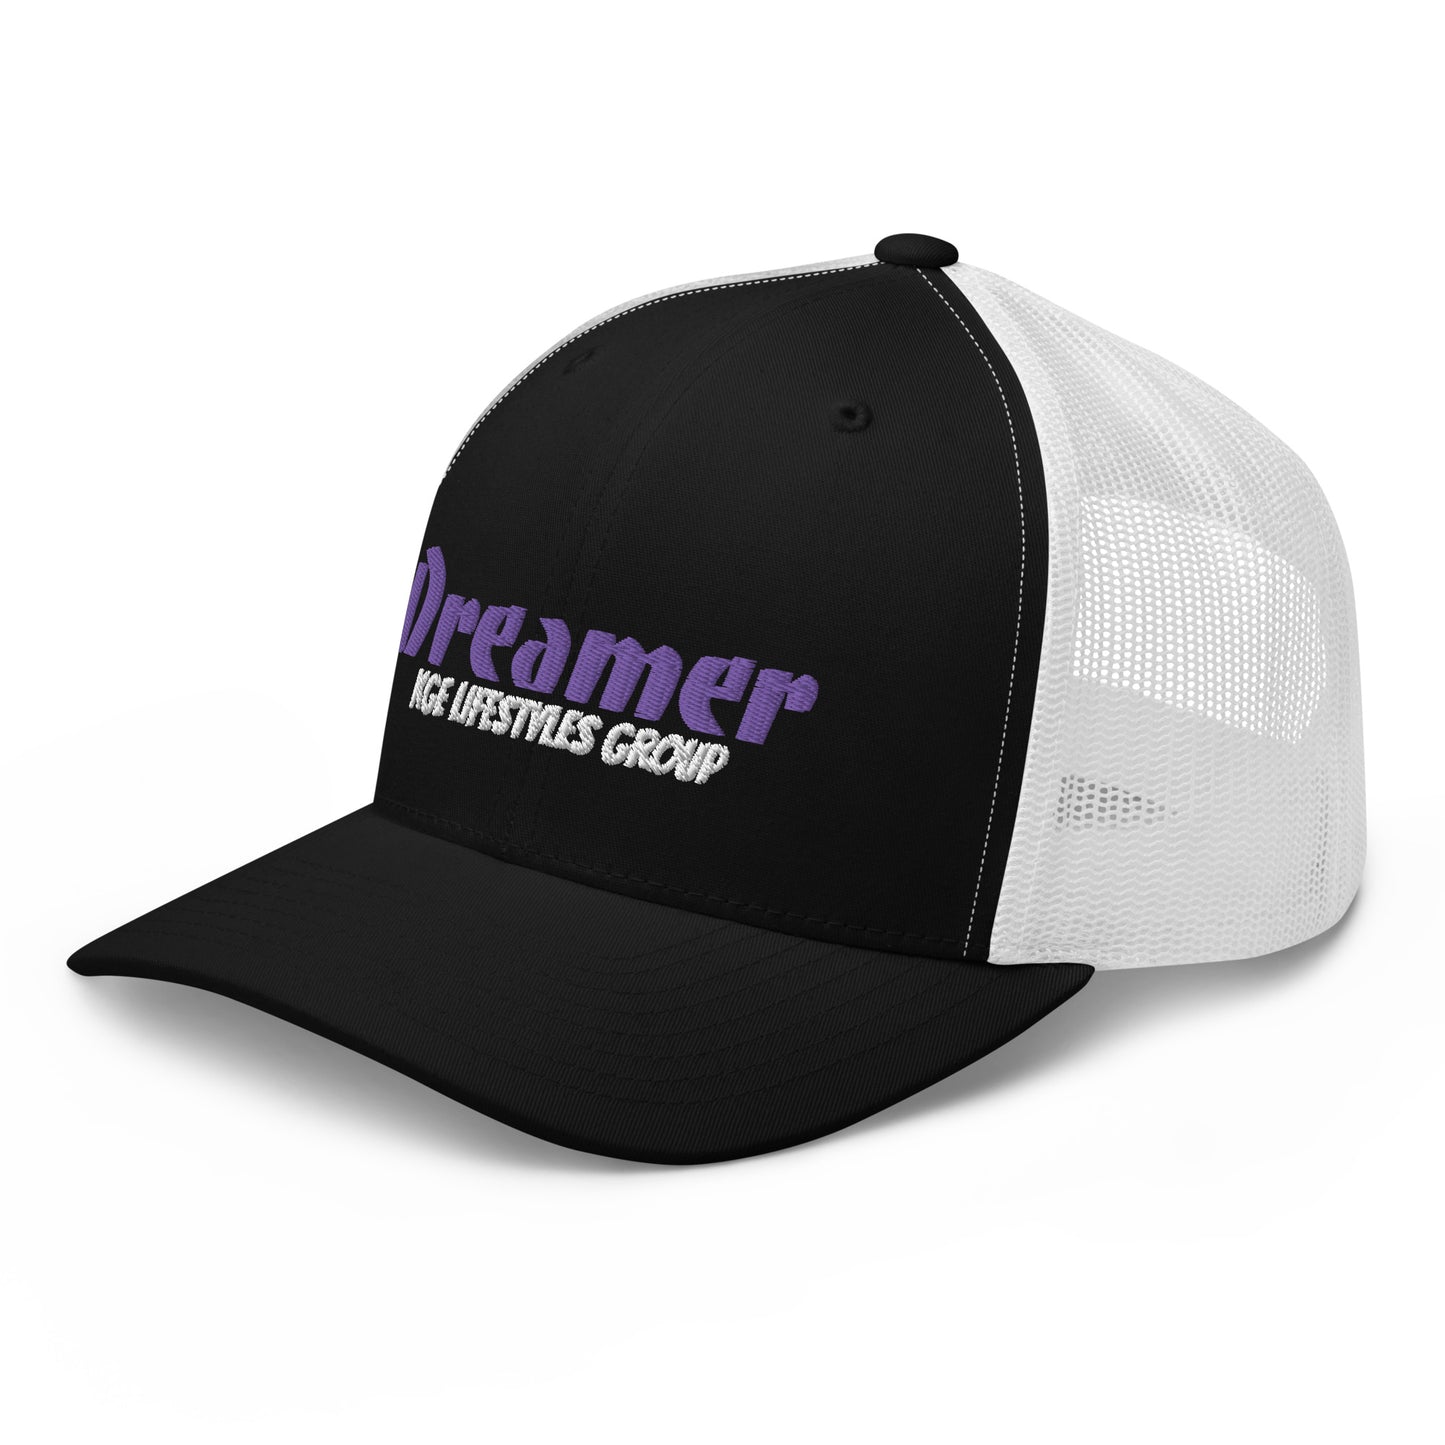 Purple Dreamer - Low Profile Trucker Cap